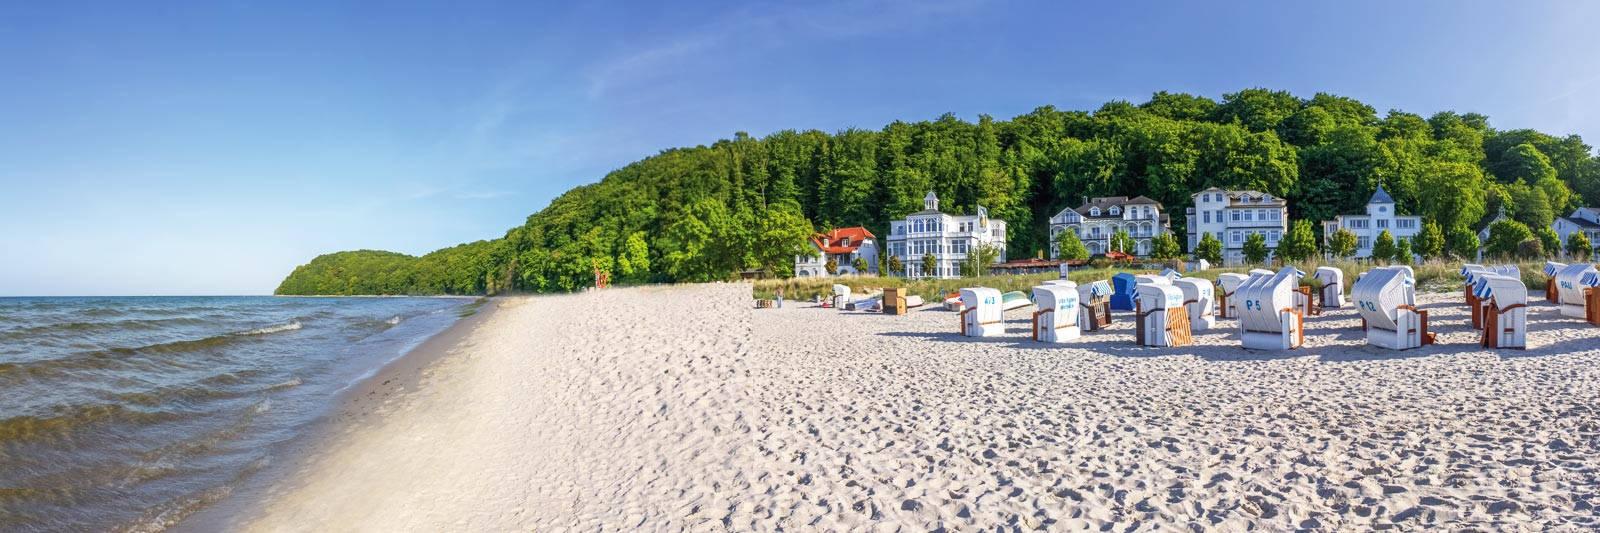 21 Ferienwohnungen und Ferienhäuser in Bützow-Land - tourist-online.de